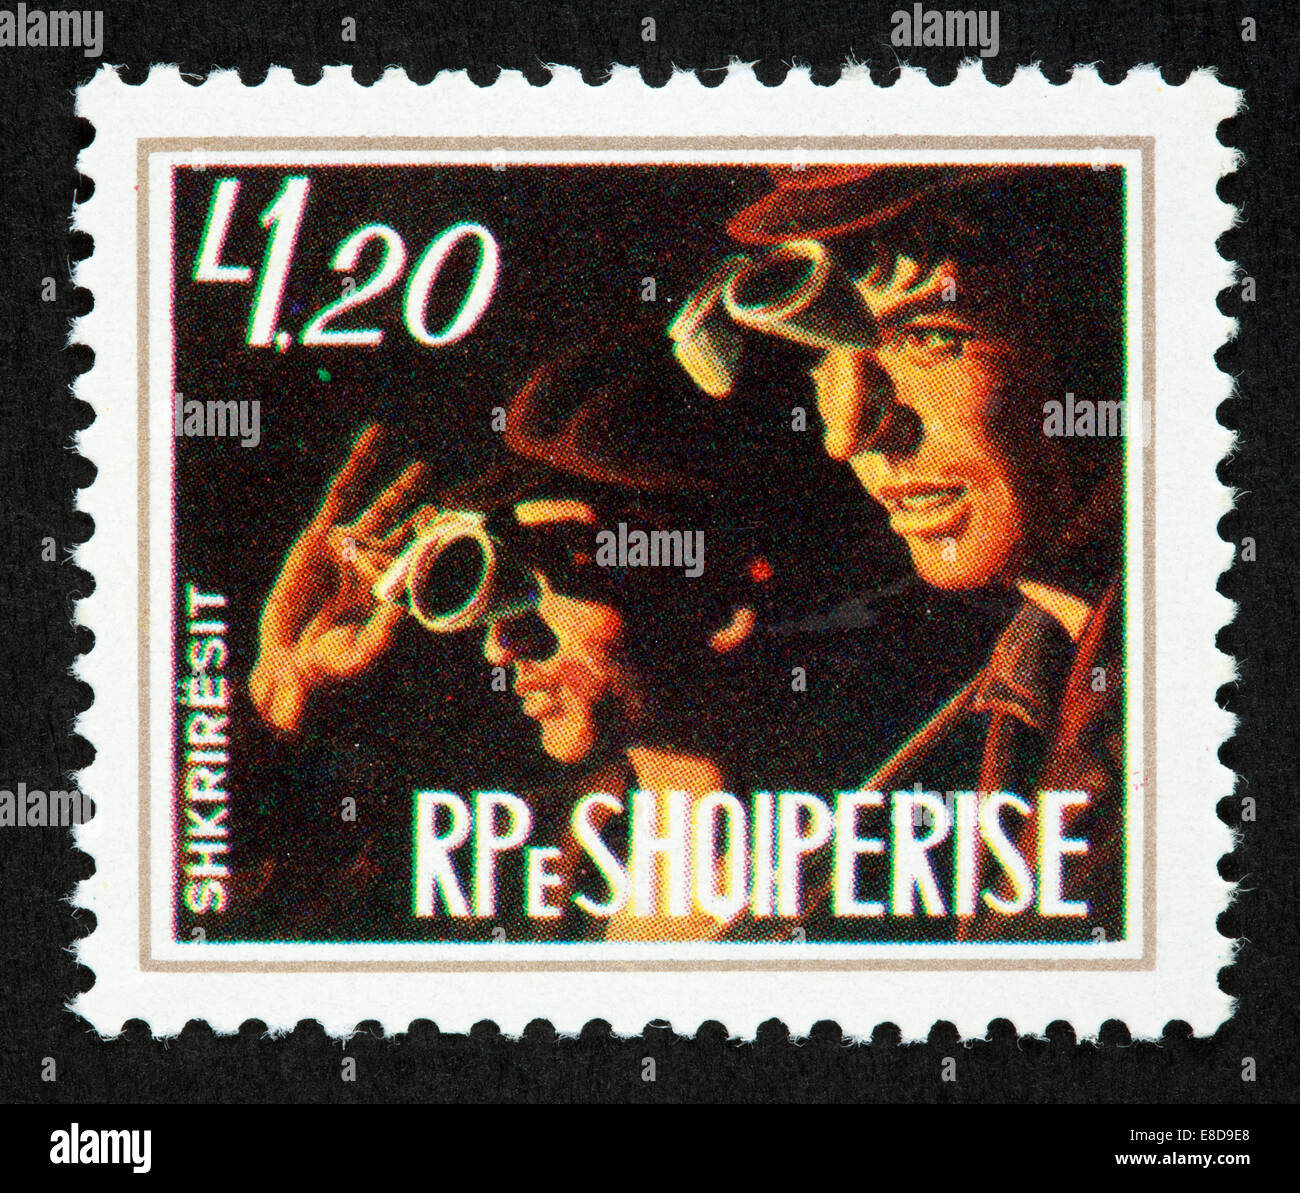 Albanischen Briefmarke Stockfoto